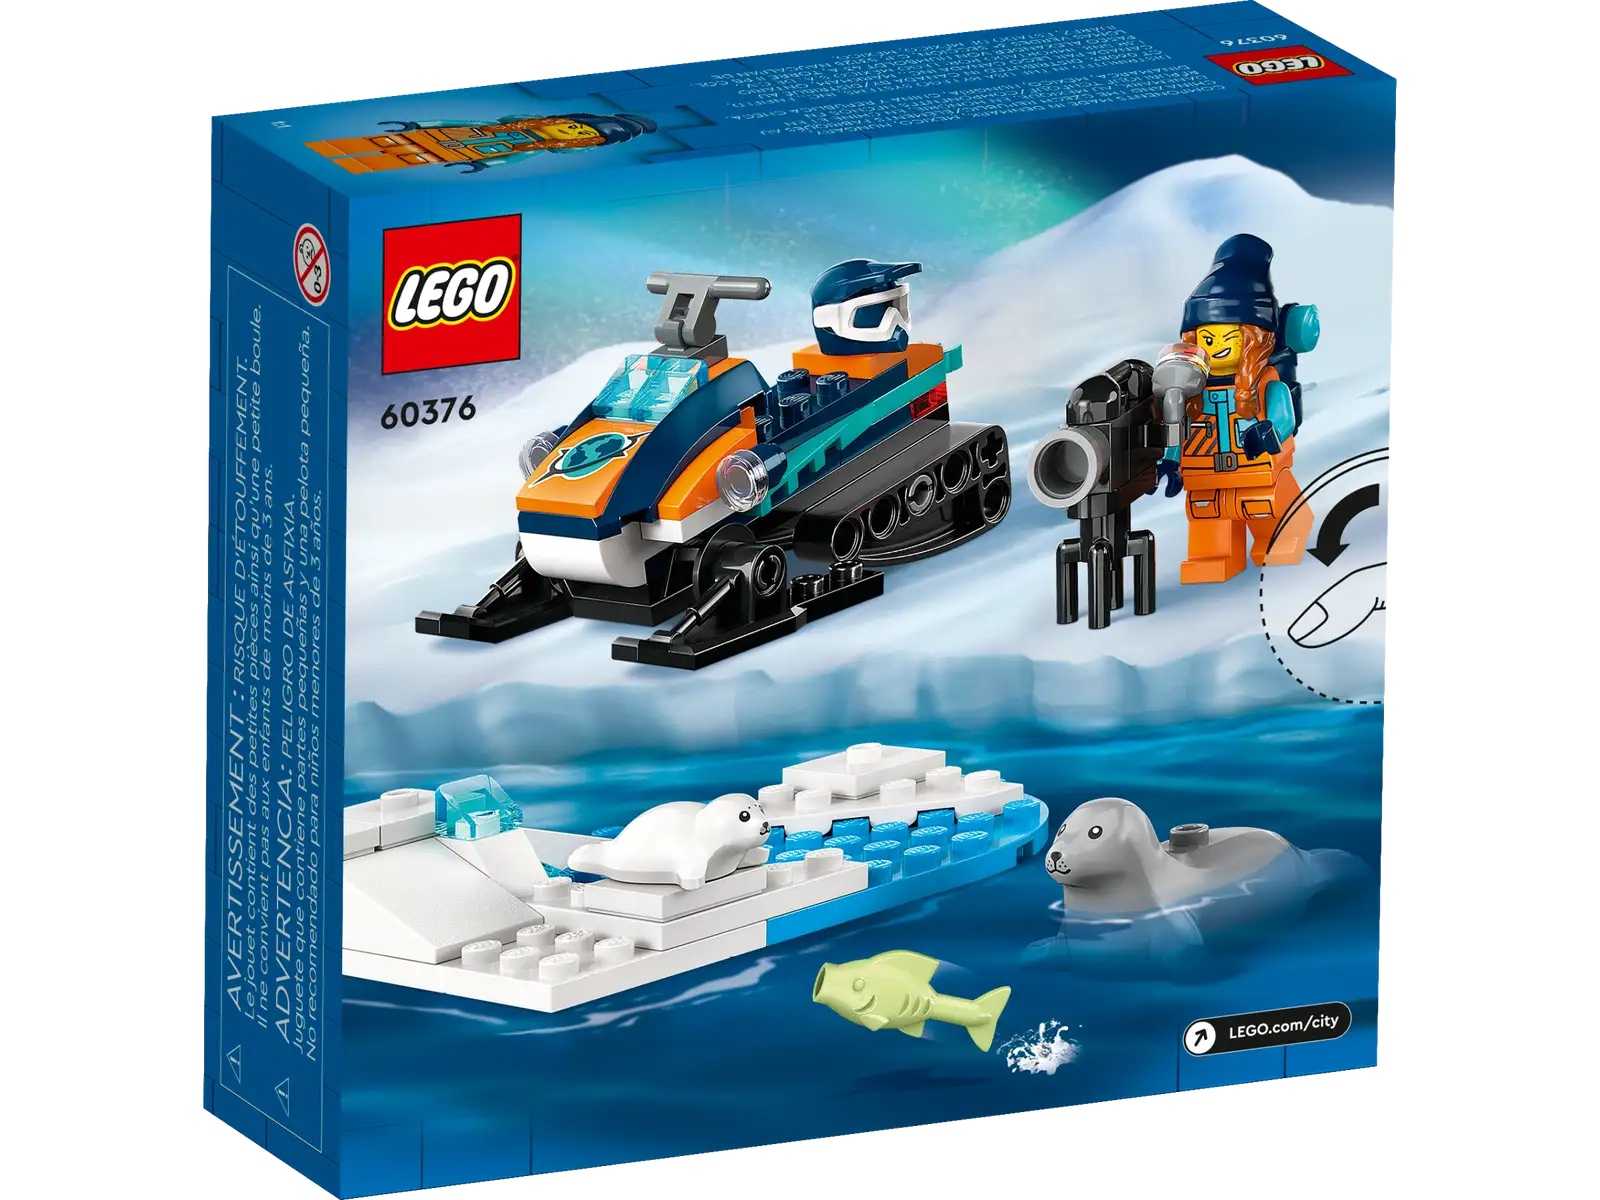 [高雄 飛米樂高積木專賣店] LEGO 60376 City-北極探險家雪上摩托車